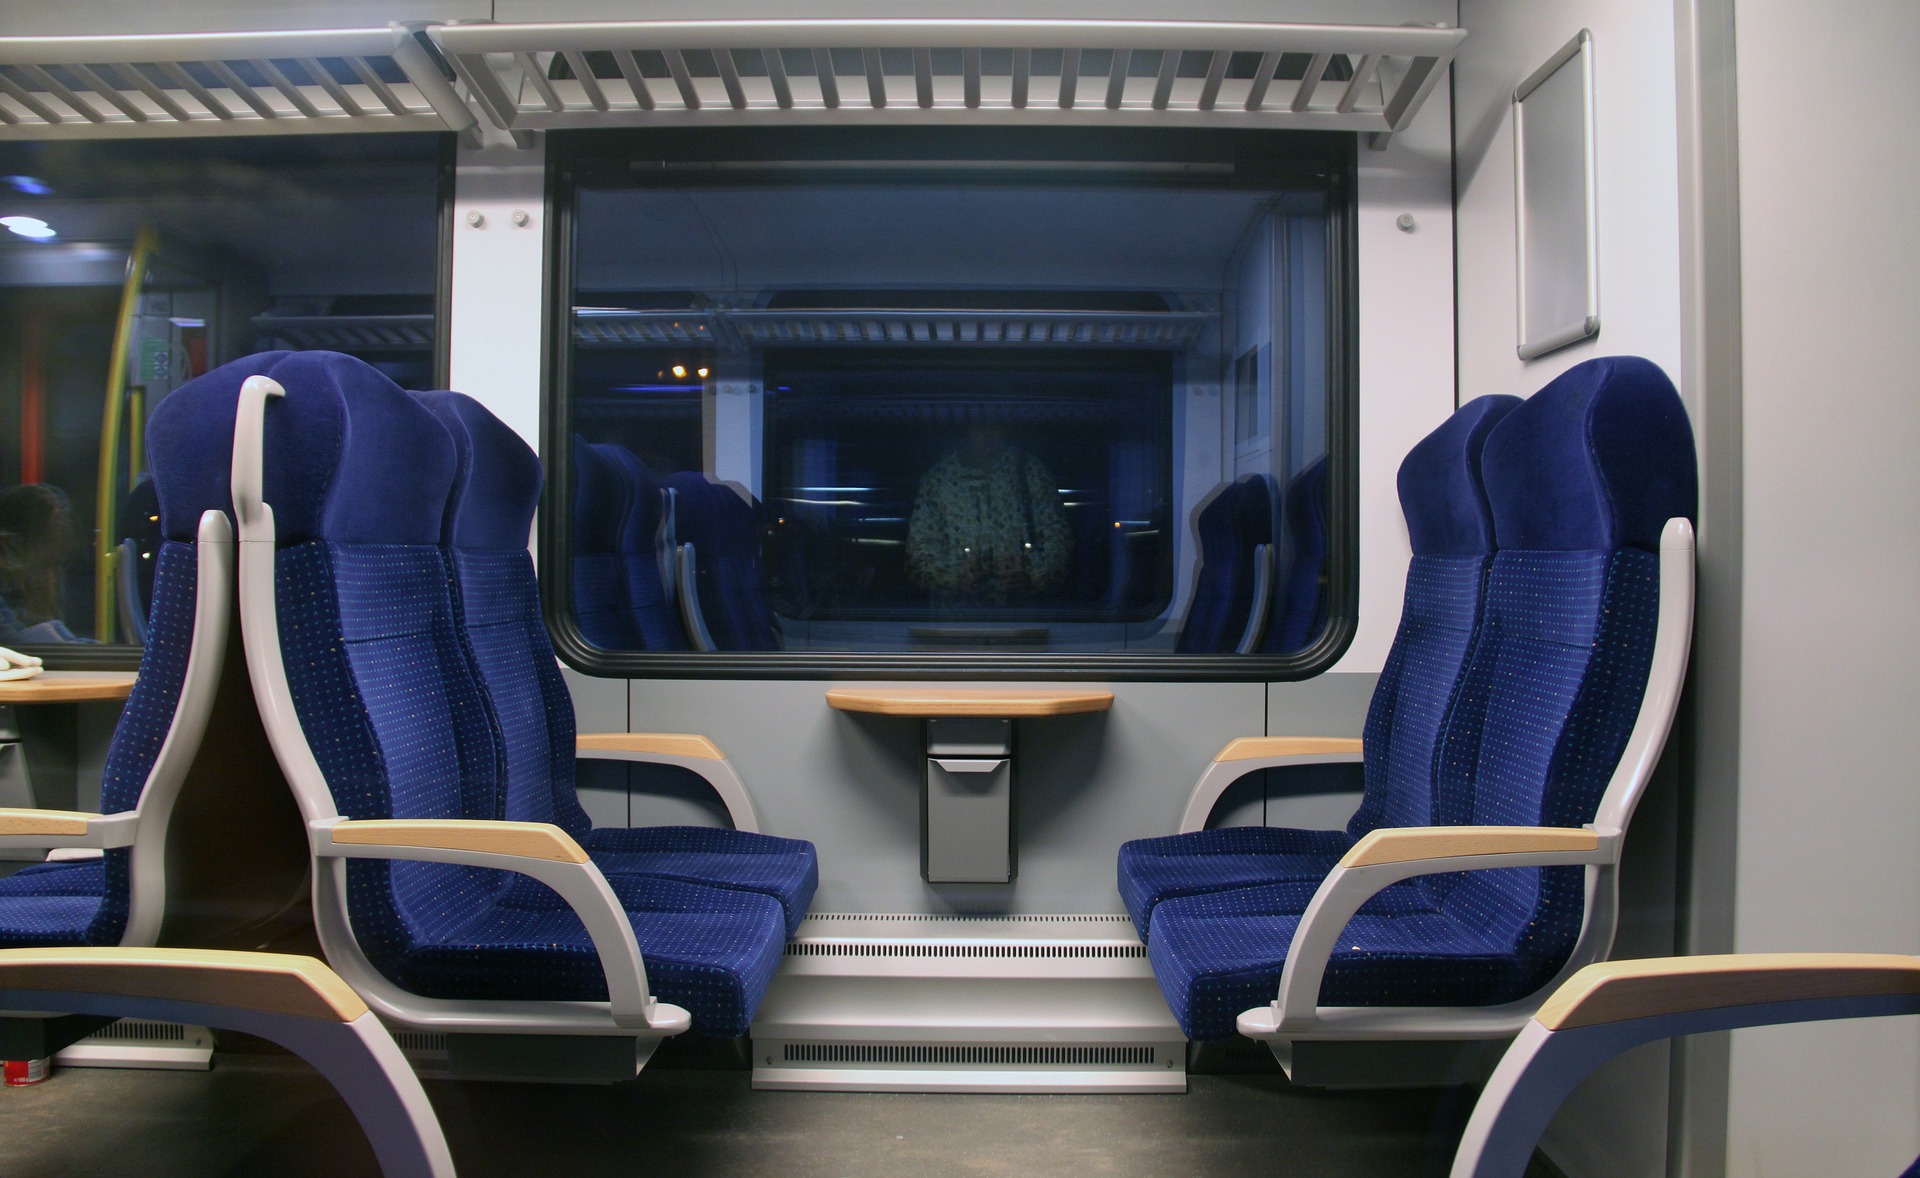 Sièges de couleur bleue dans un train | Source : Pixabay